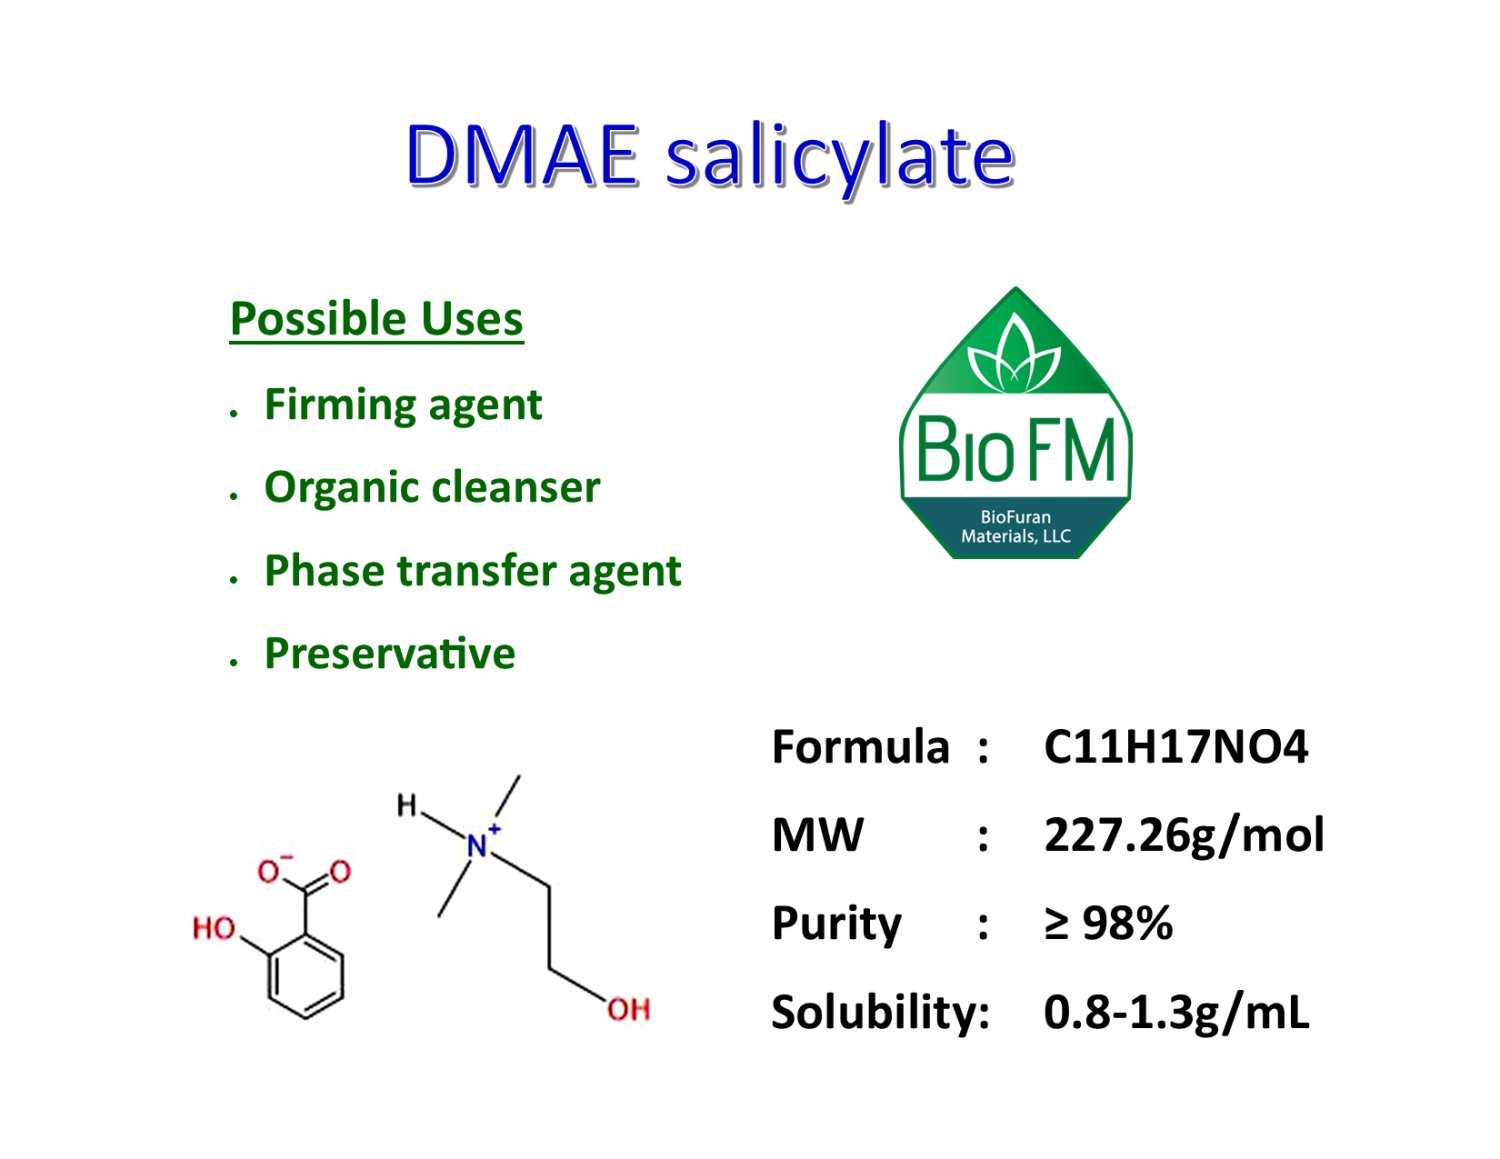 100g N,N-Dimethylaminoethanol salicylate salt (DMAE Salicylate)